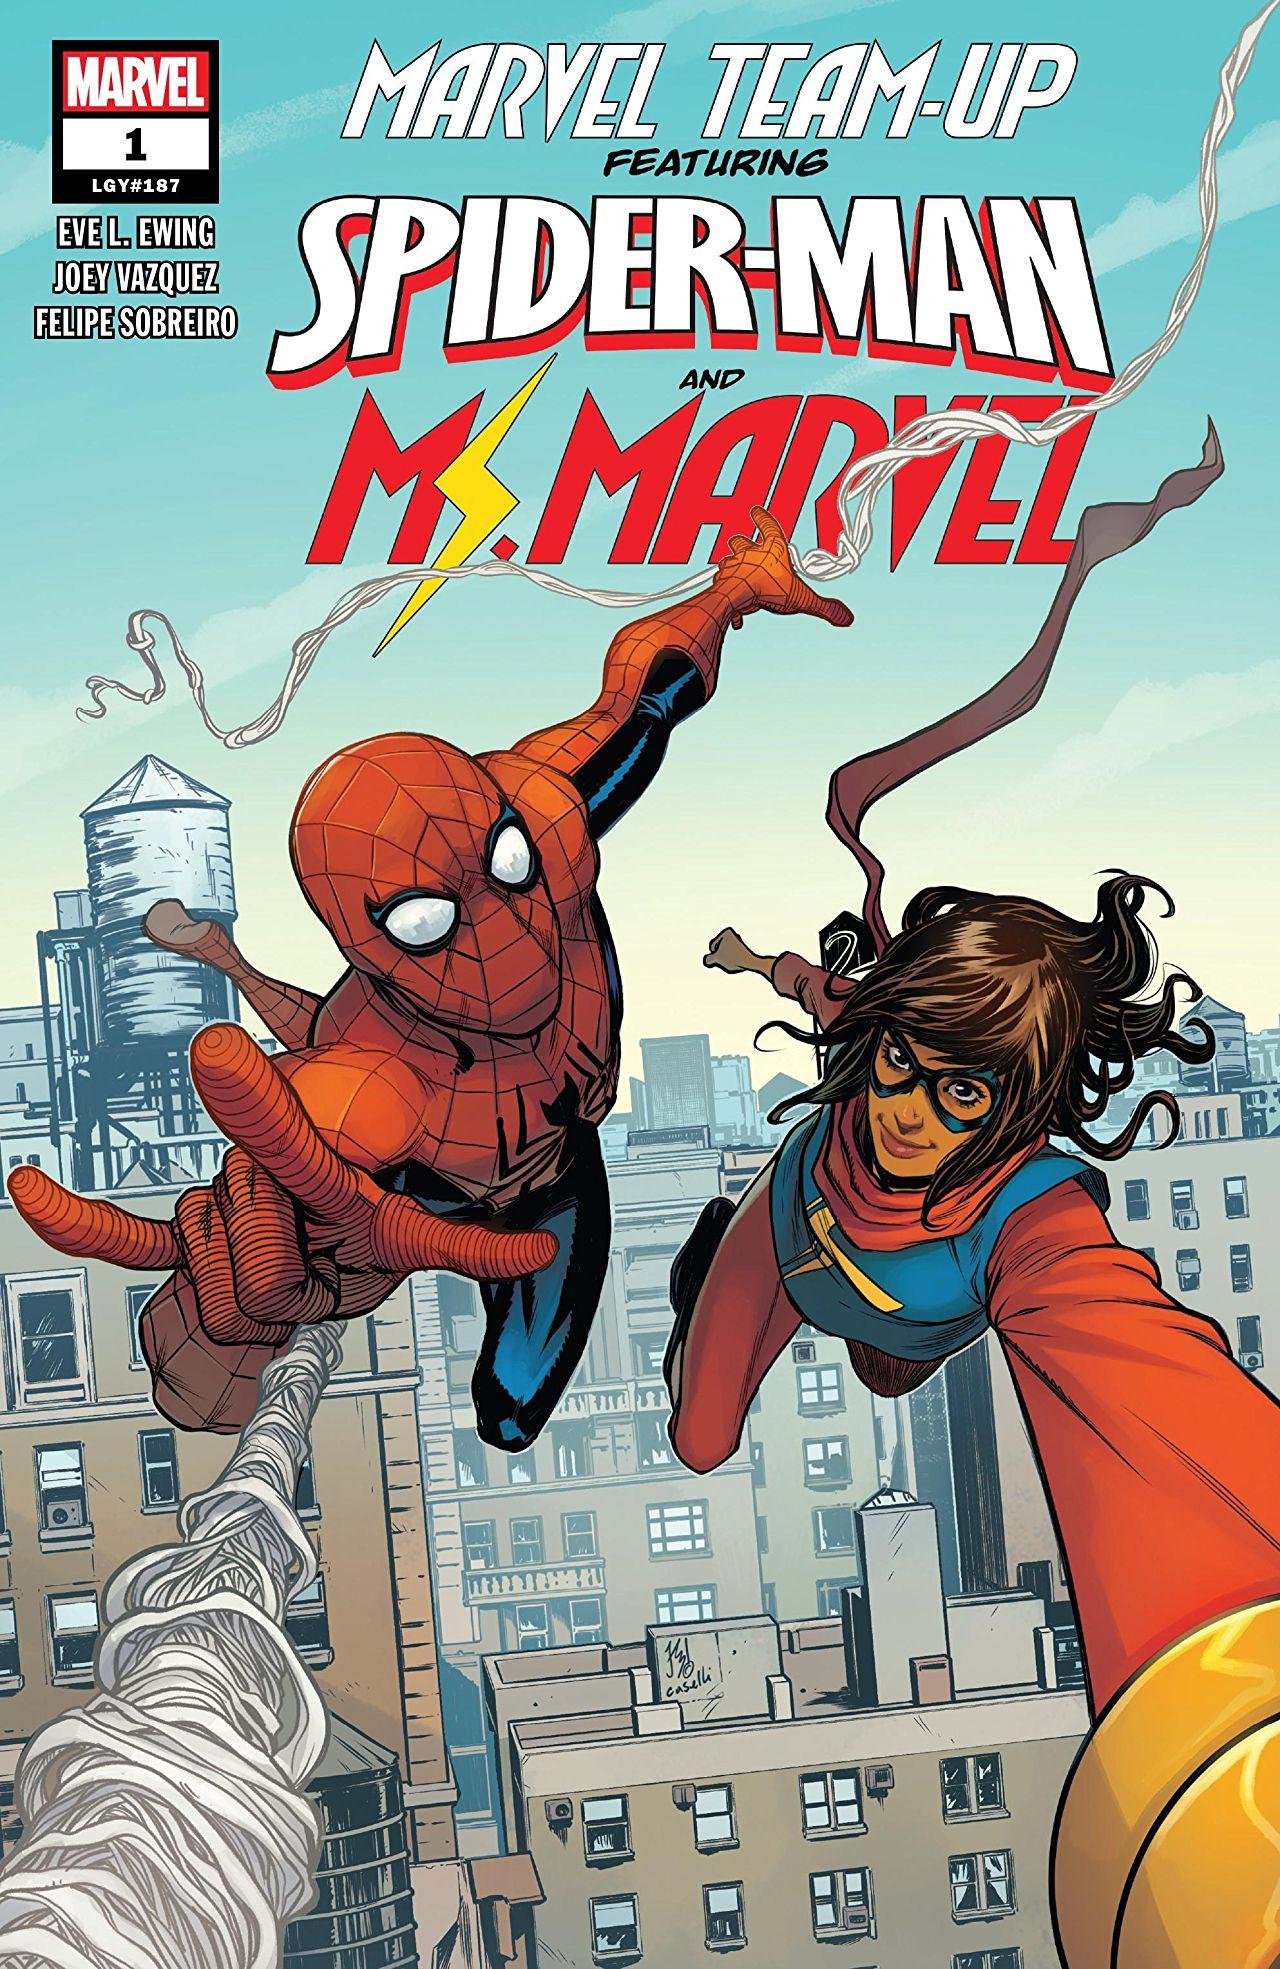 Marvel Team-Up Vol. 4 #1